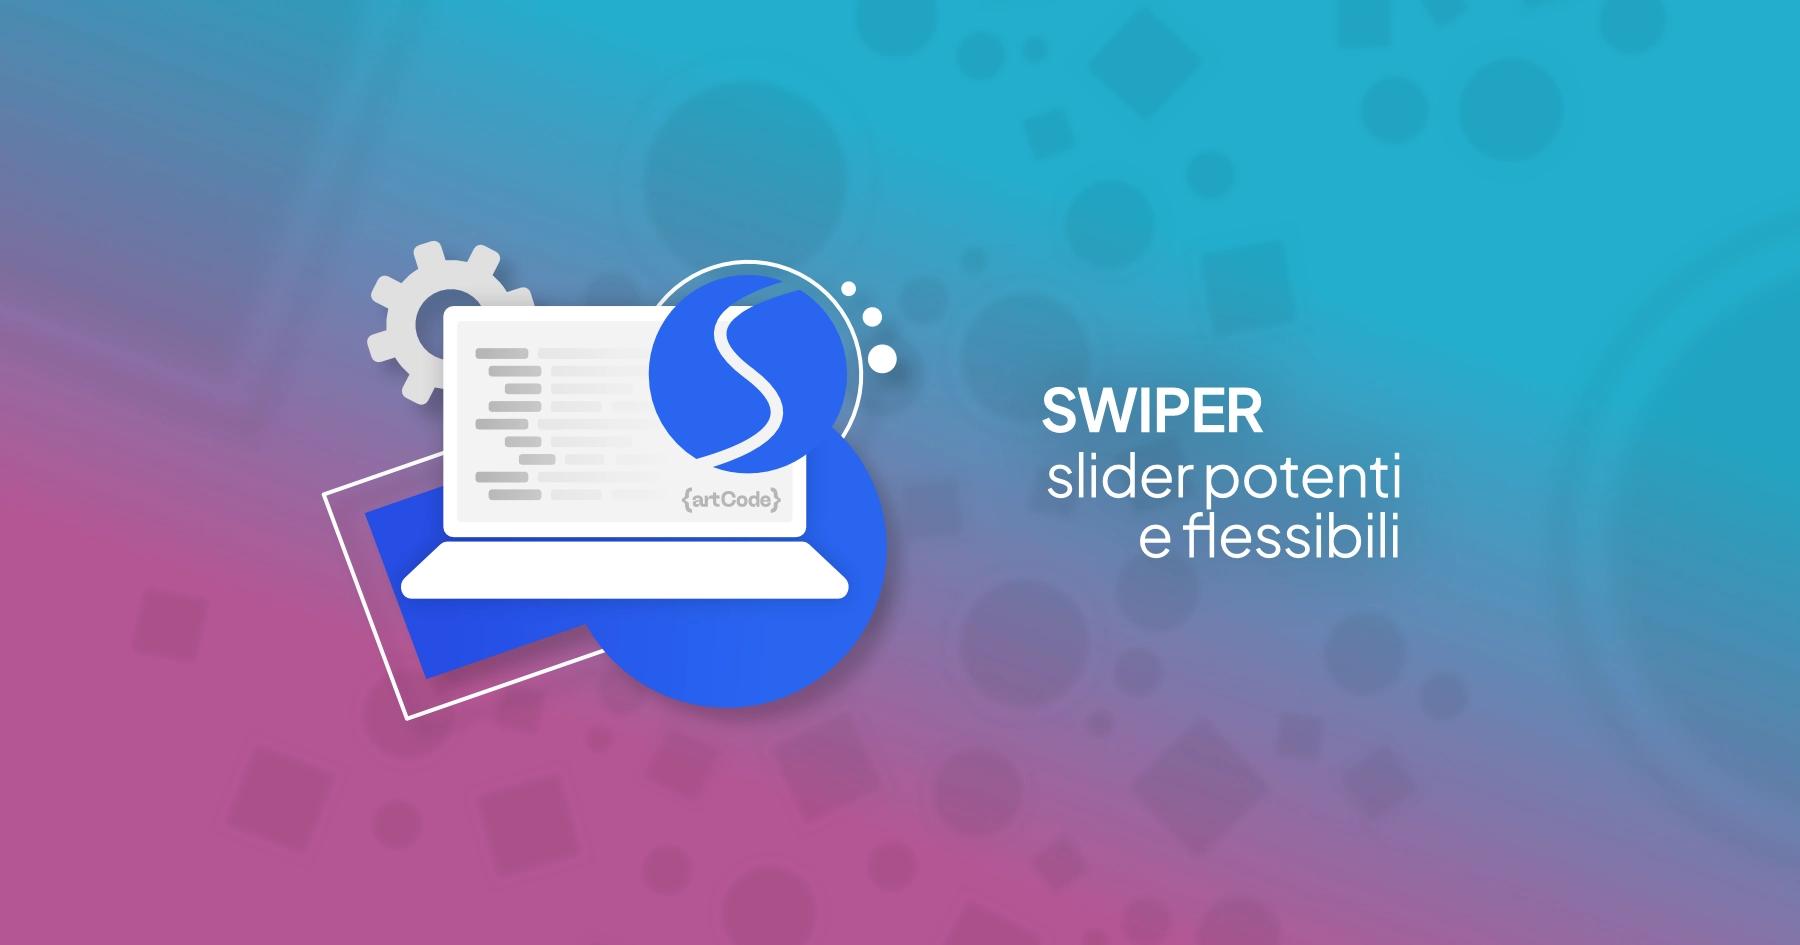 React Swiper: slider potenti e flessibili